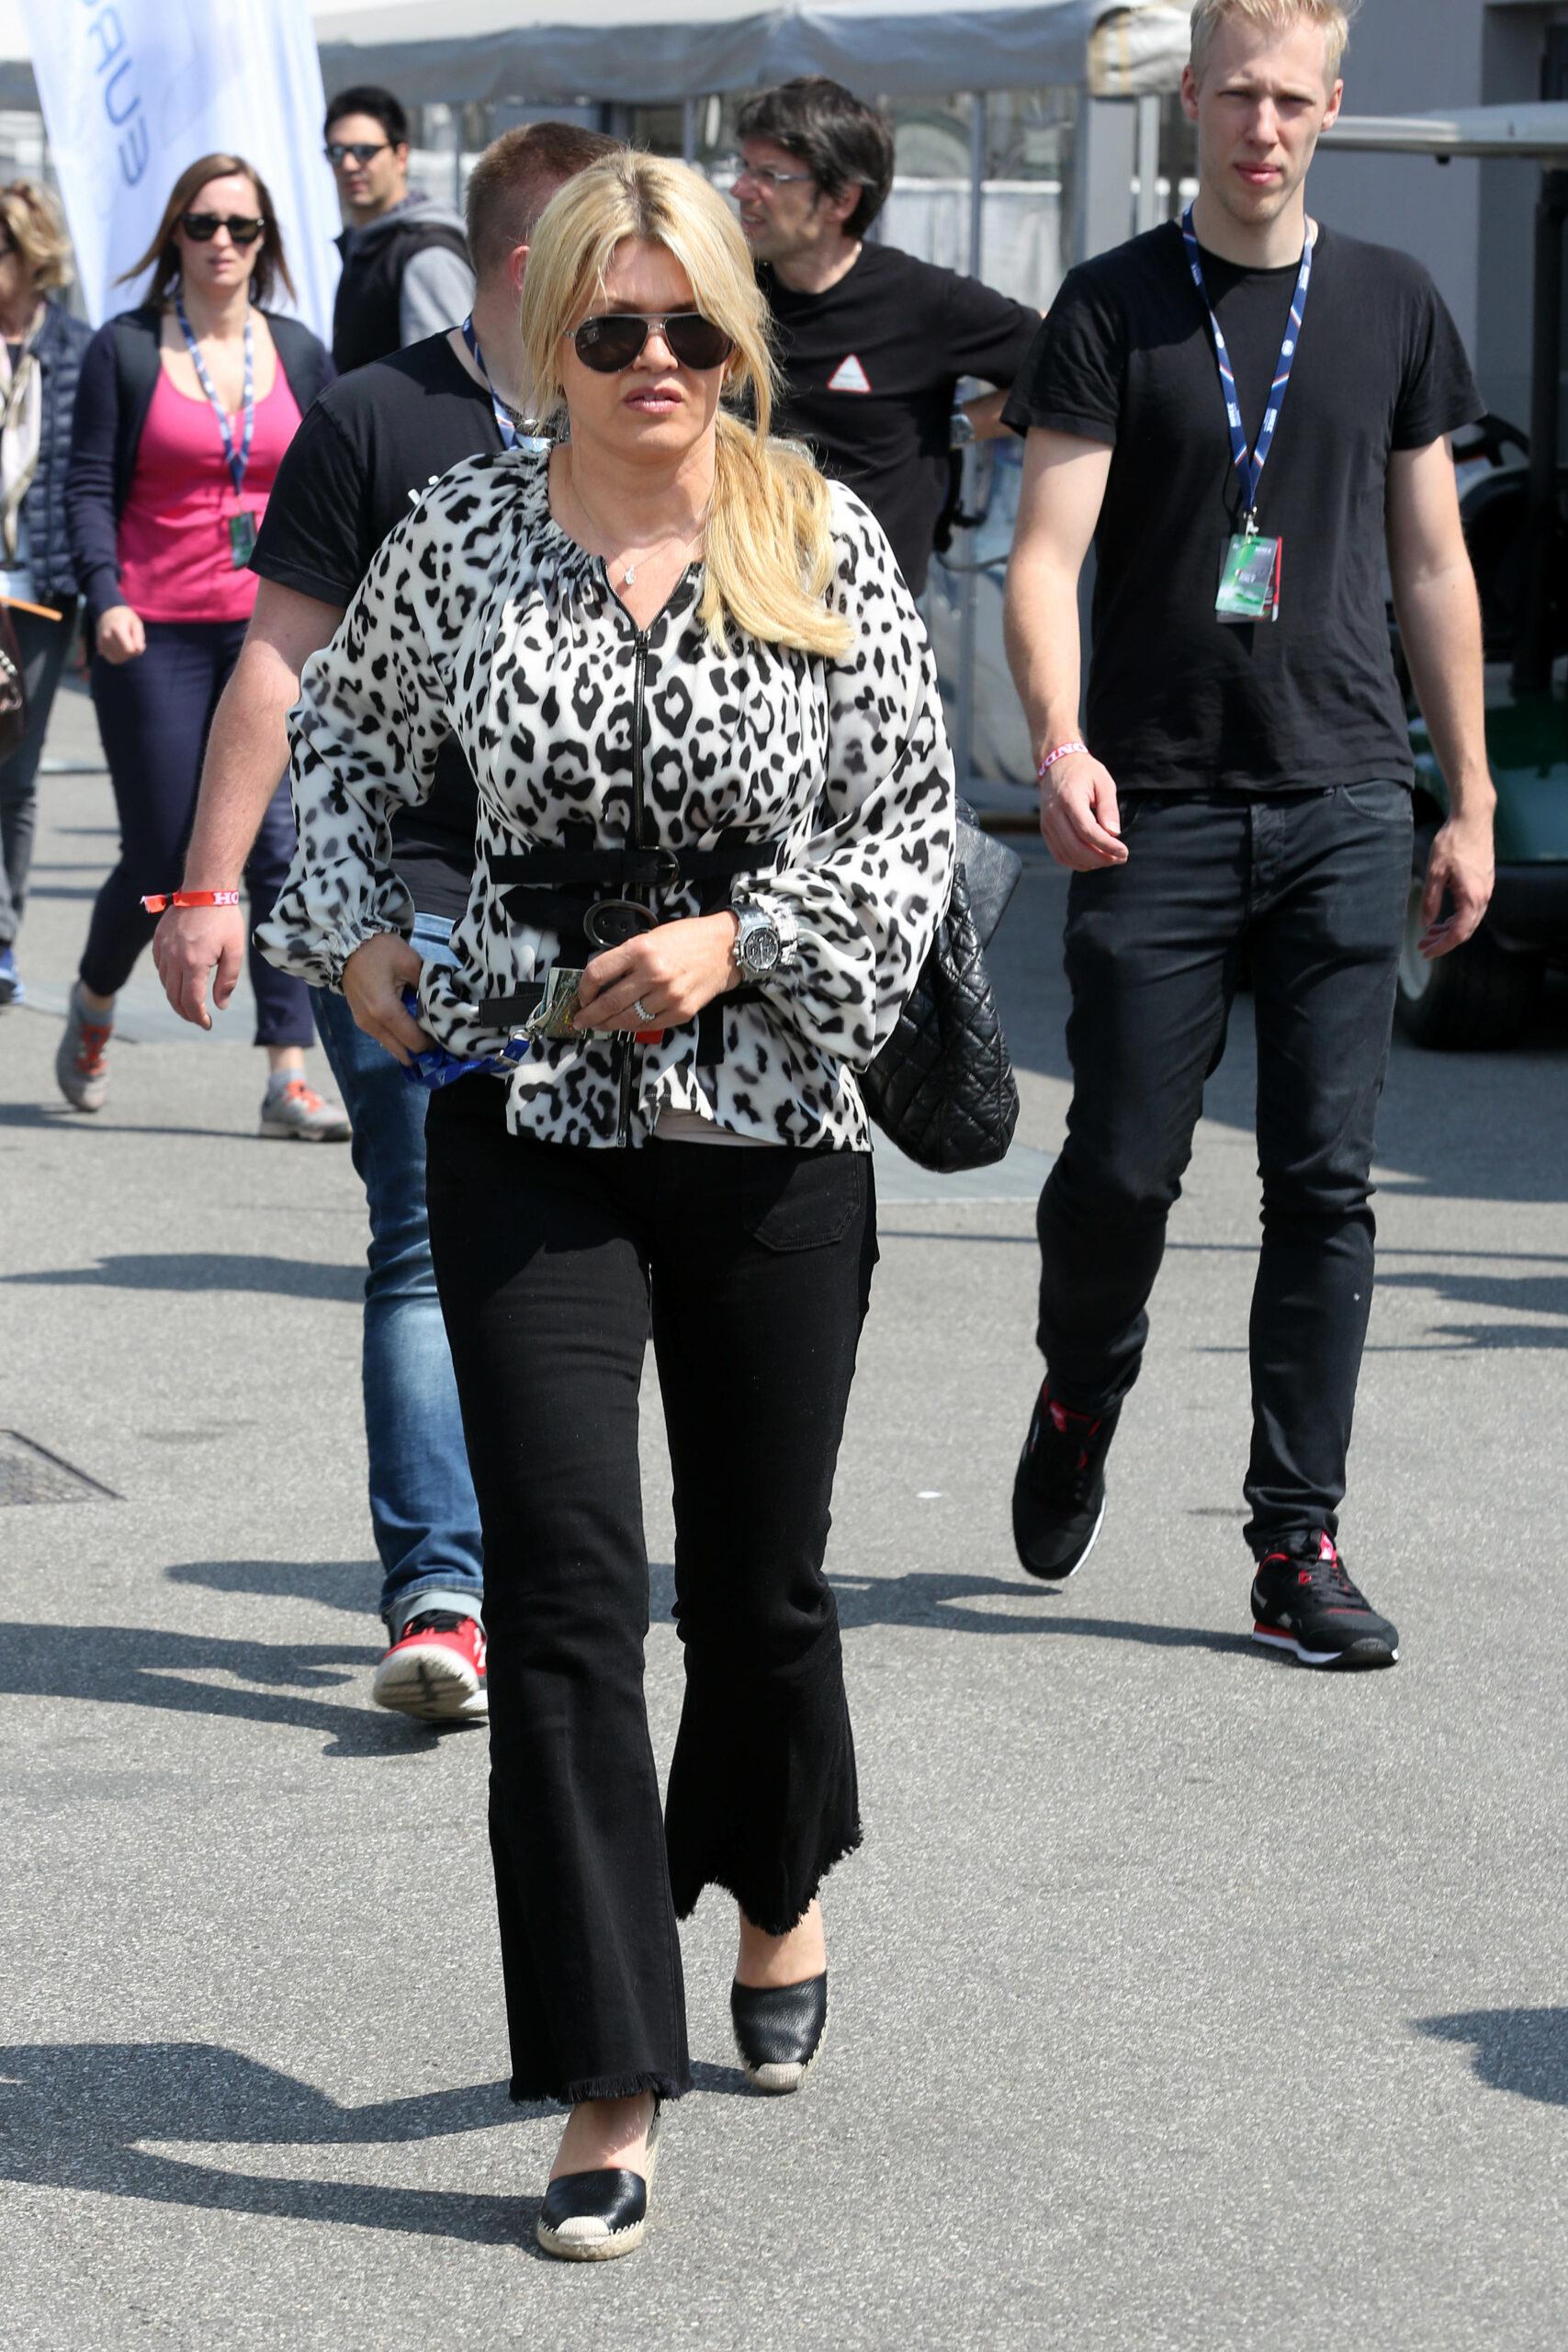 Corinna Schumacher with daughter Gina Maria and boyfriend in Monza